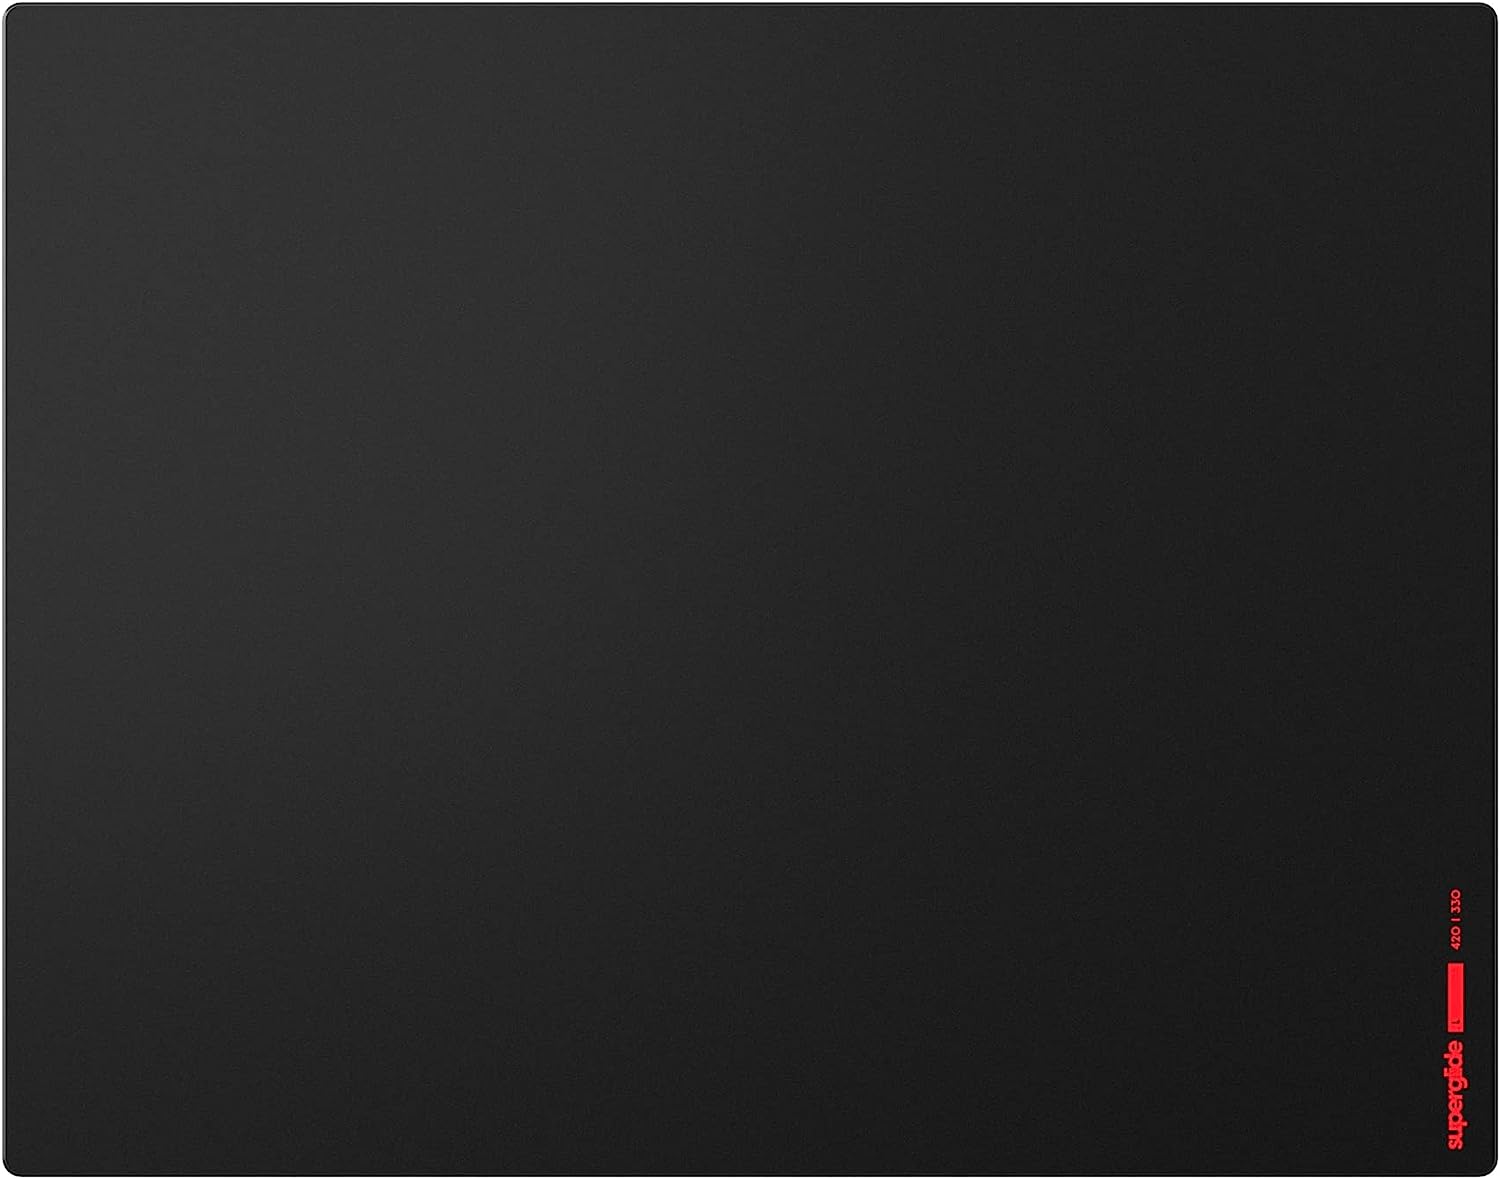 【新品】1週間以内発送 Pulsar Gaming Gears eSports仕様 ゲーミングマウスパッド Superglide PAD ガラスパッド 滑り止め 国内正規品 42cm × 33cm (L, Black)